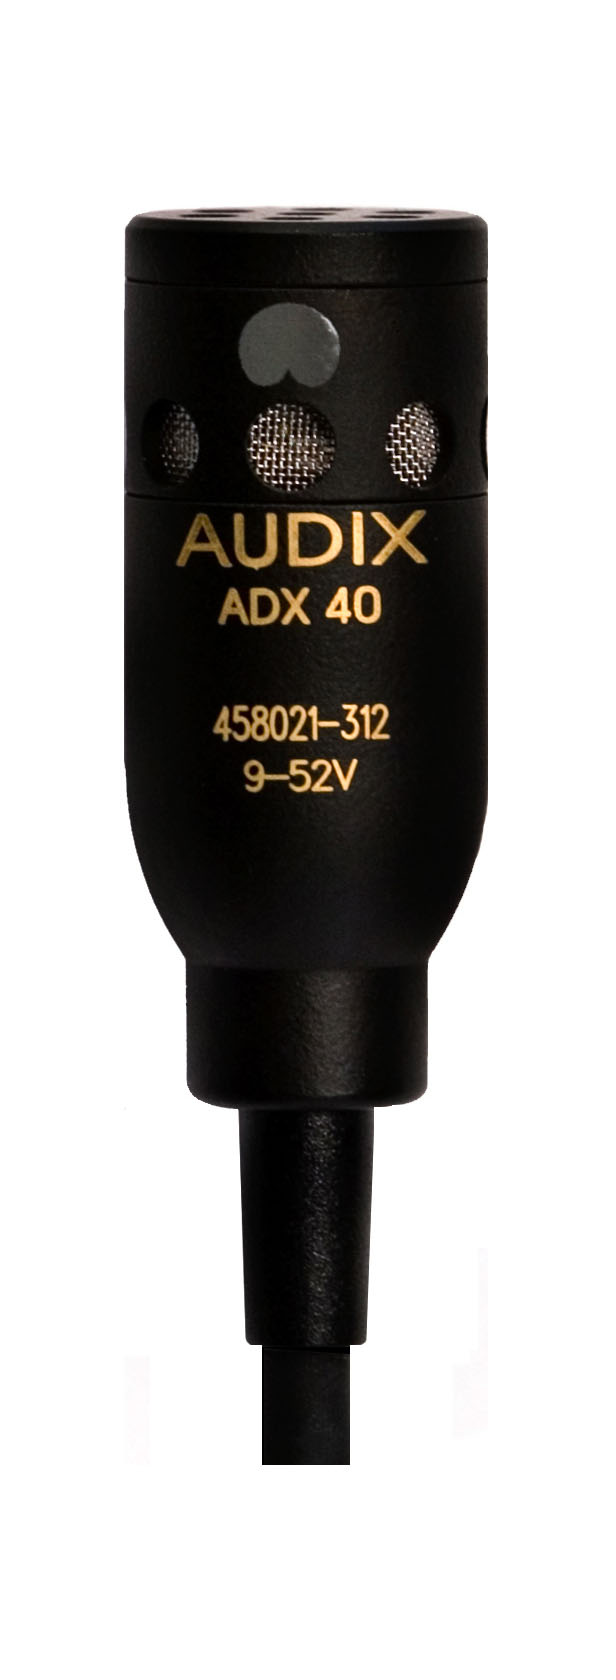 Специальные микрофоны AUDIX ADX40 микрофон mobicent bm 800 c ветрозащитой кабелем и переходником для телефона